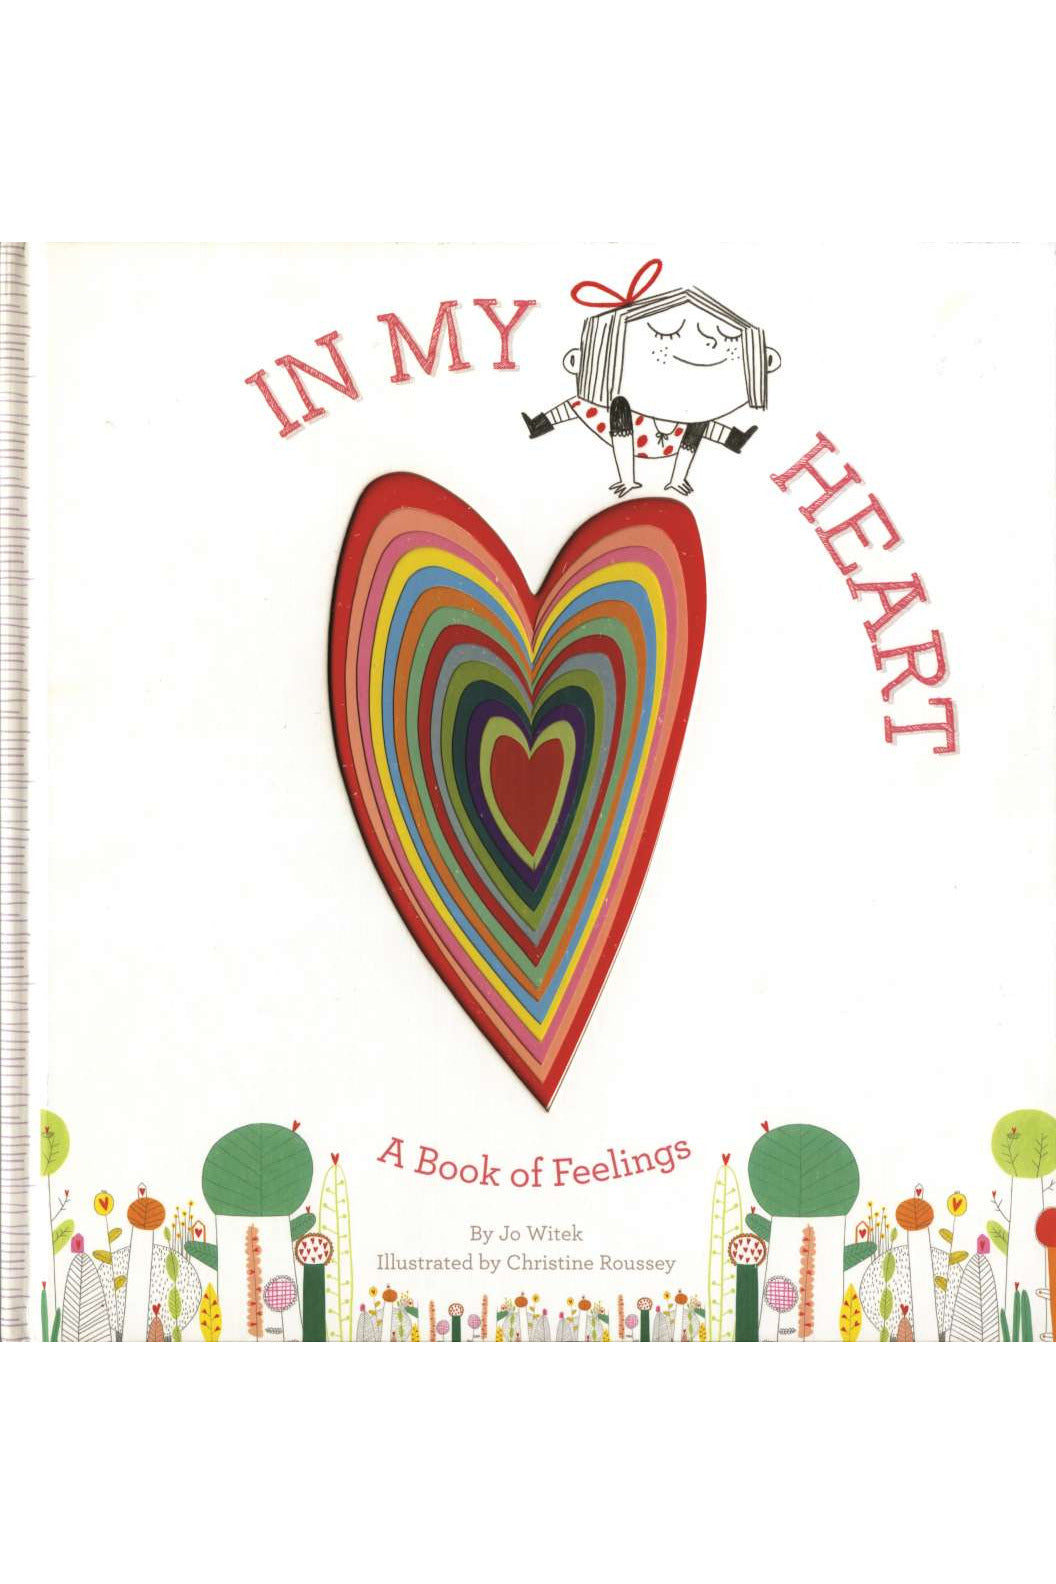 IN MY HEART - A BOOK OF FEELINGS